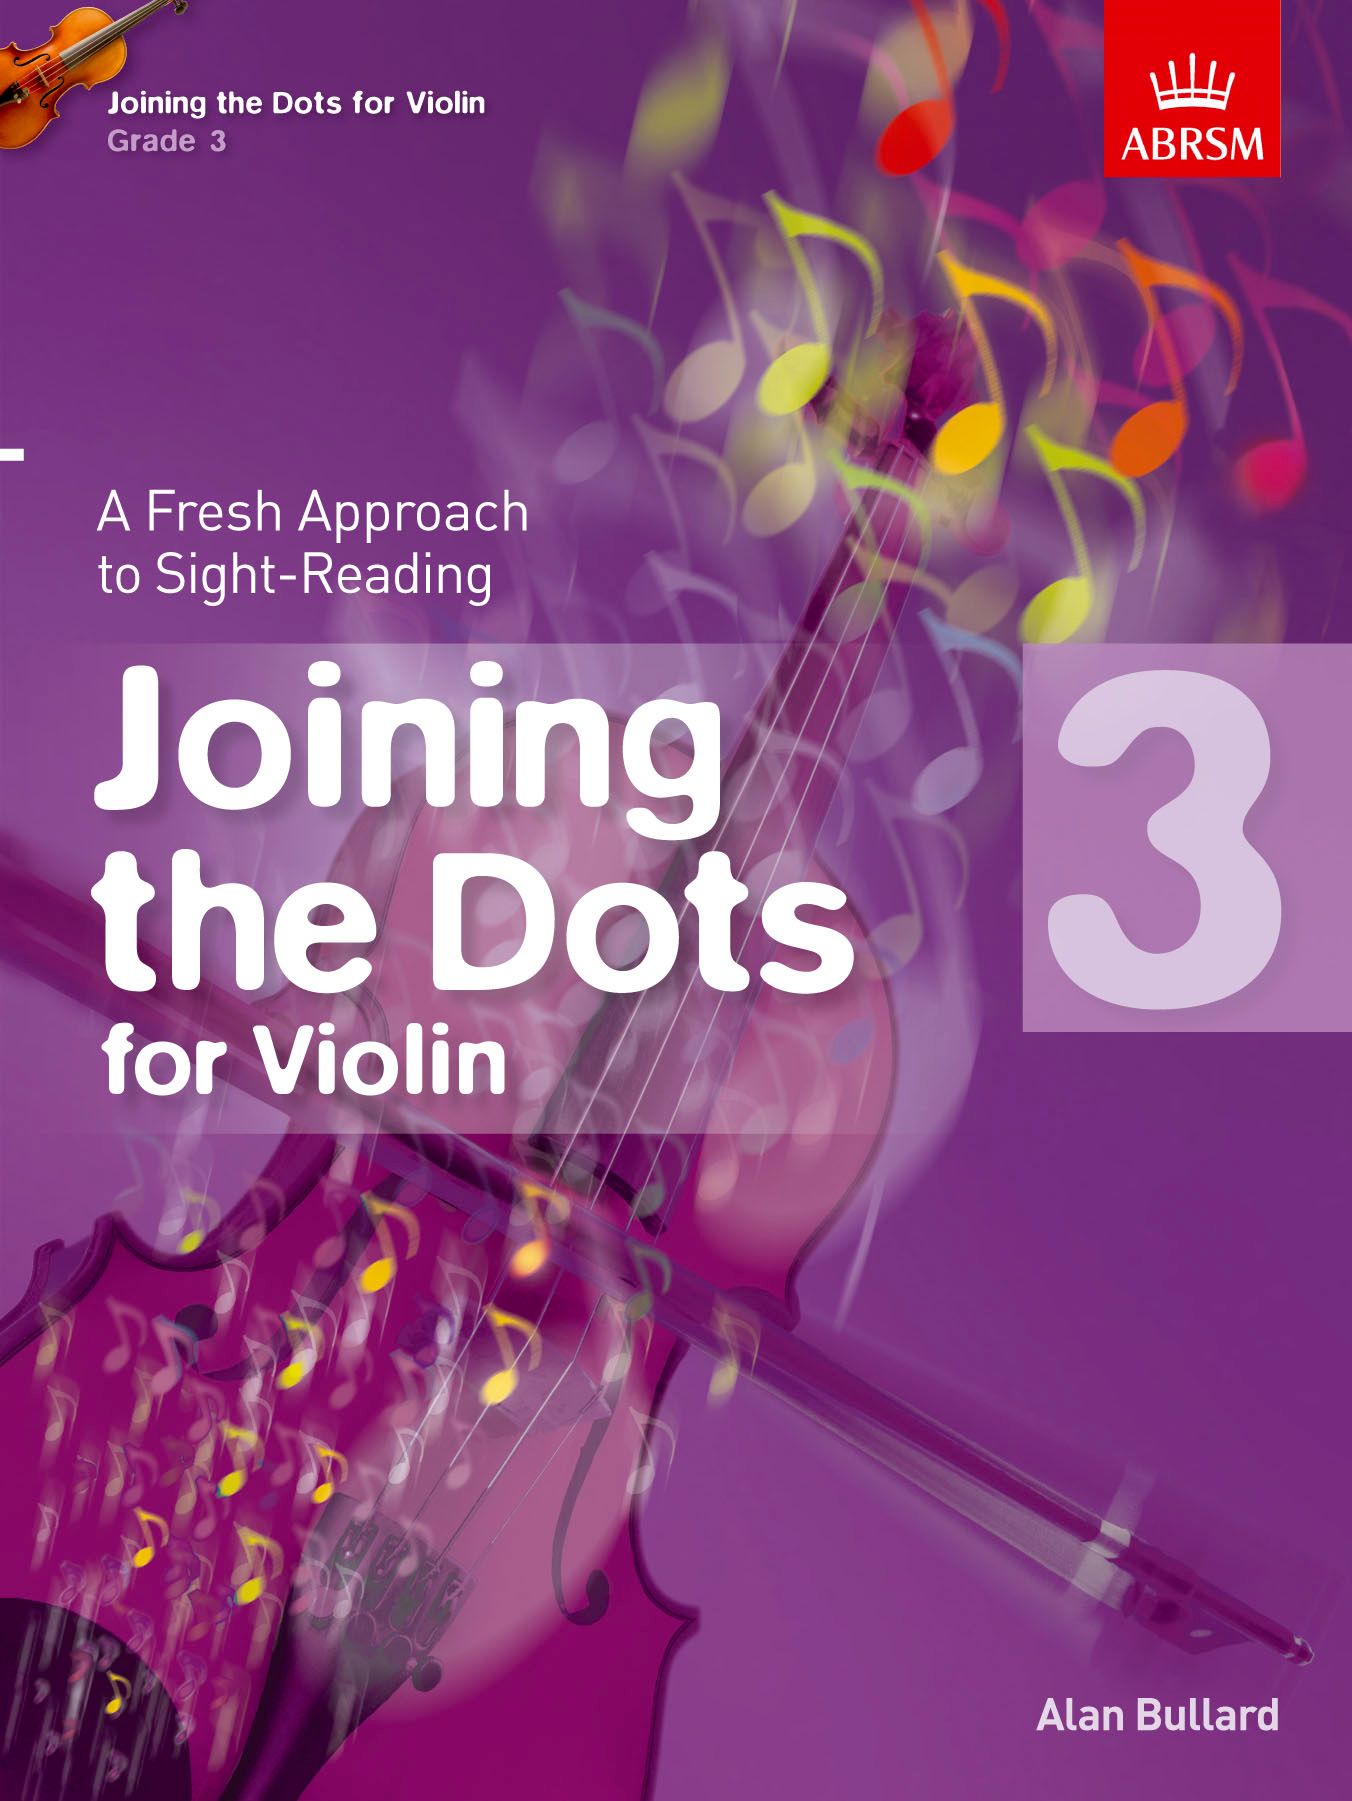 Joining The Dots Grade 3 Violin